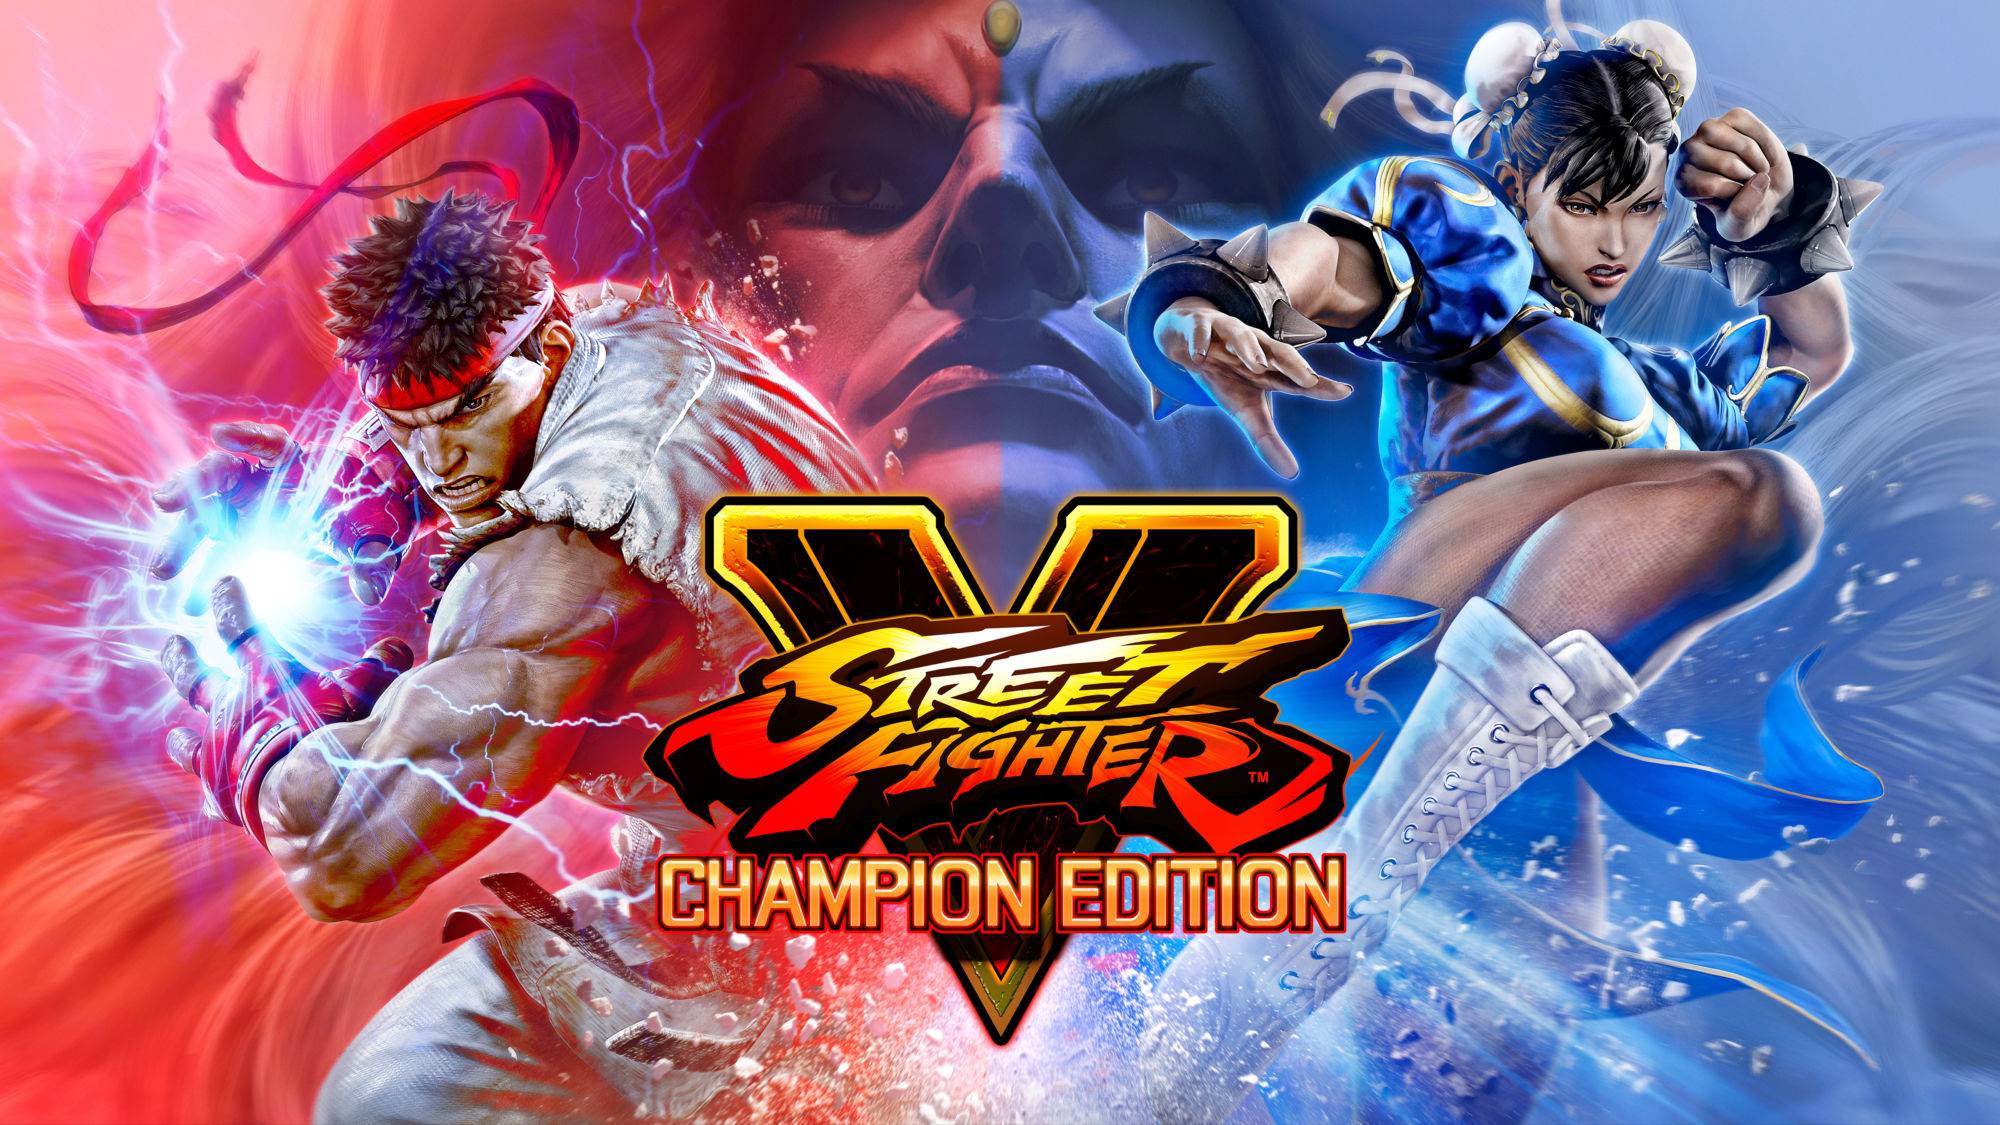 Street Fighter V: Champion Edition te ofrece la experiencia más completa